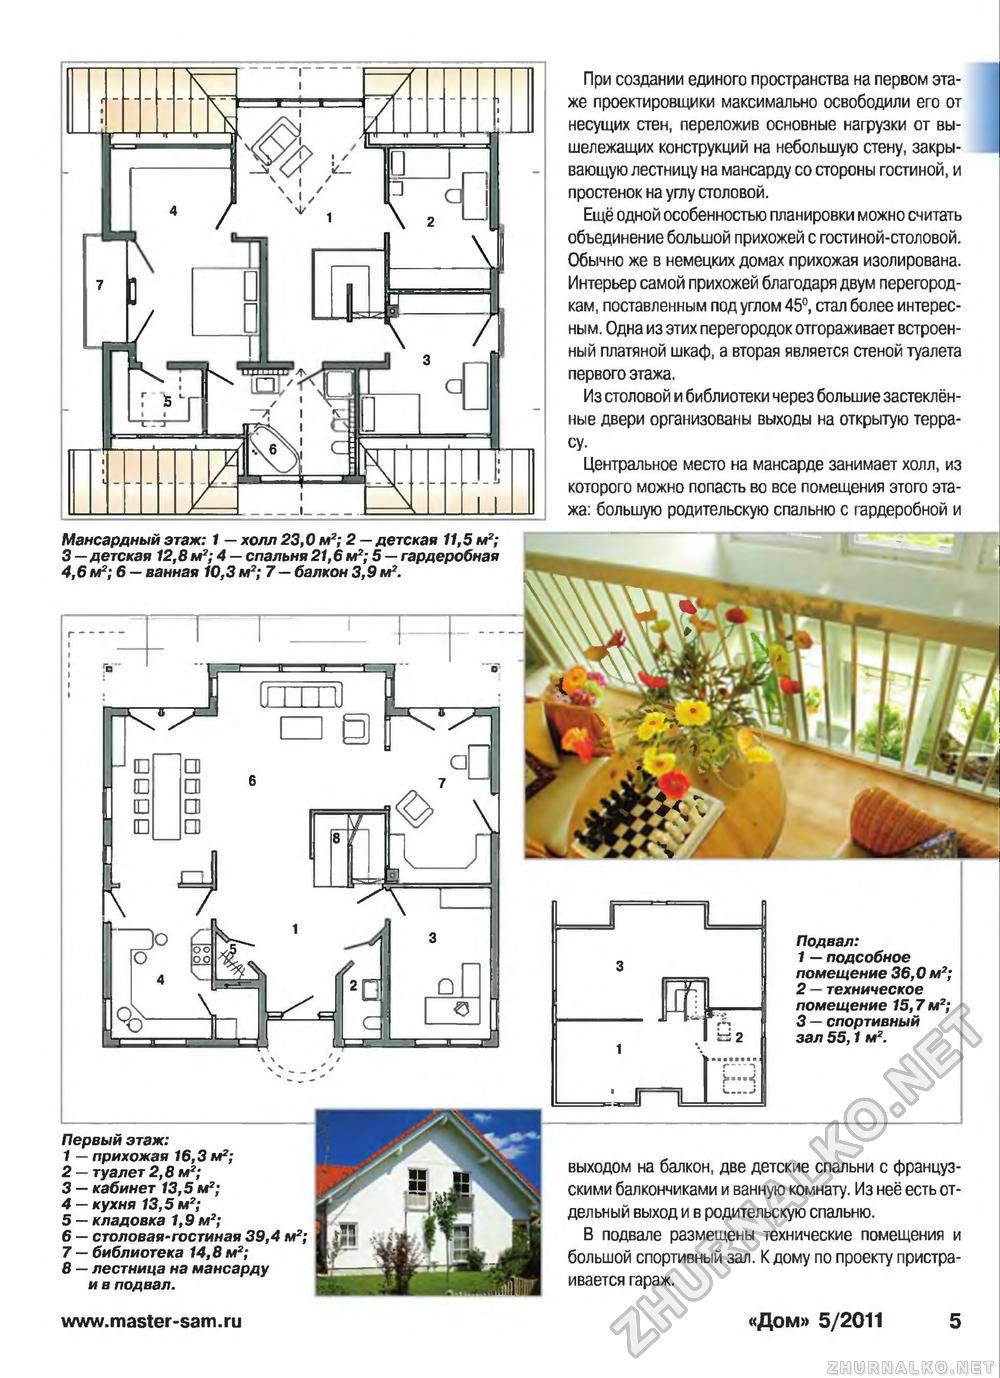 Дом 2011-05, страница 5